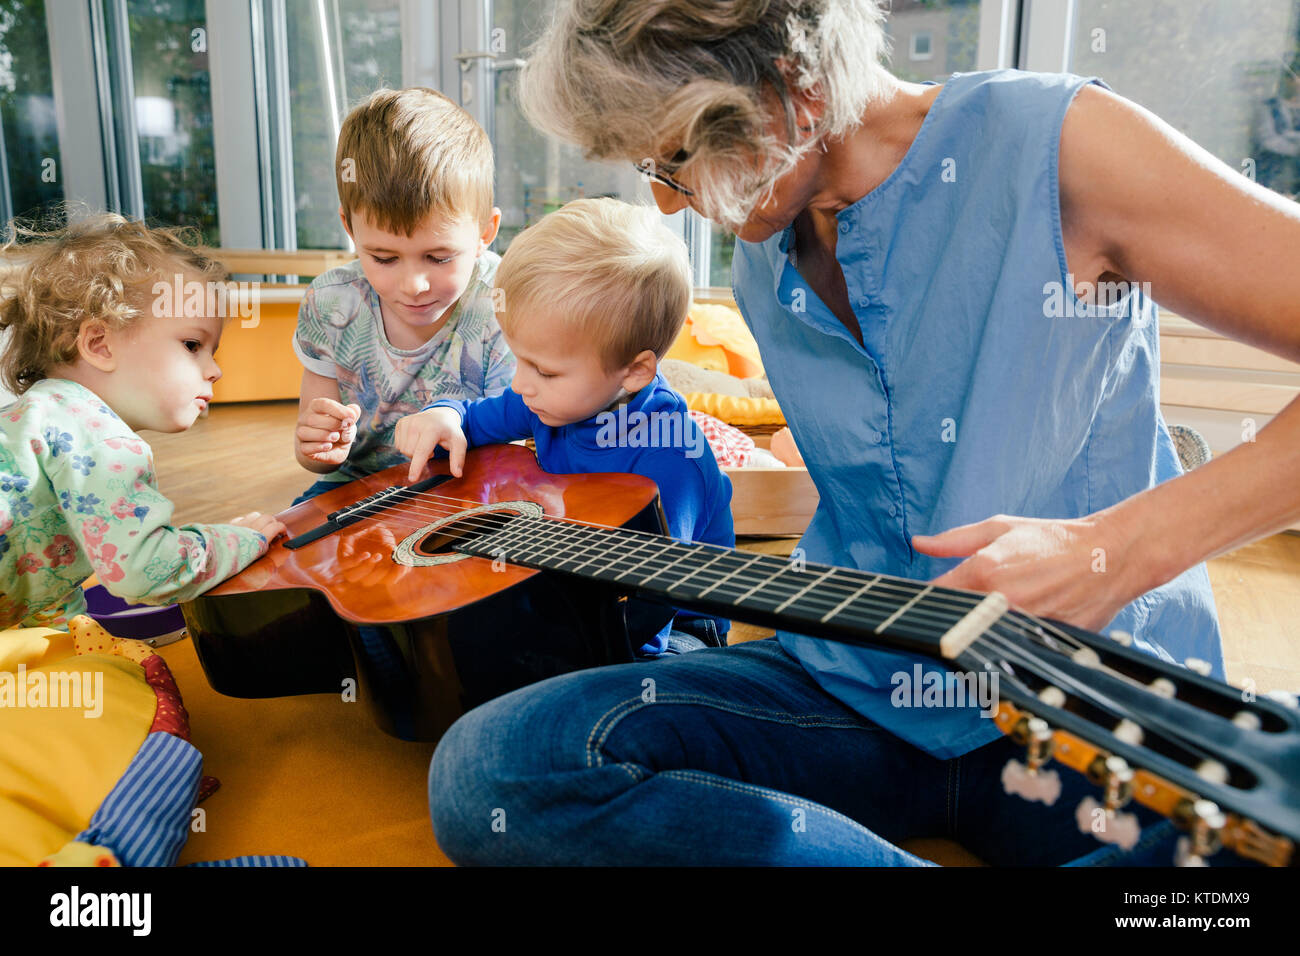 Pre-school Lehrer, eine Gitarre für Kinder im Kindergarten Stockfotografie  - Alamy